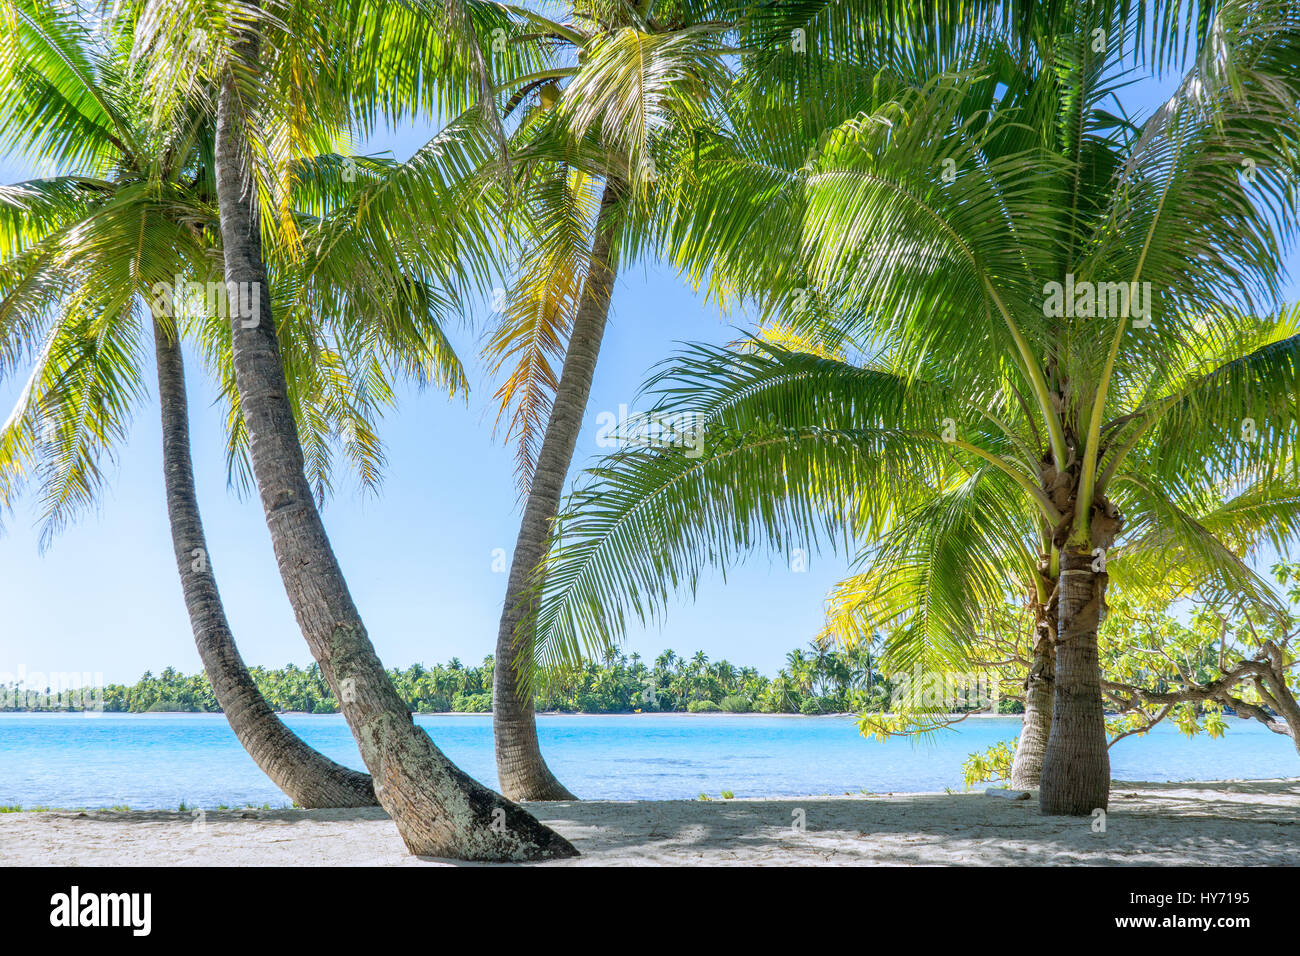 Sea view through palm trees on Moorea island in French Polynesia Stock Photo